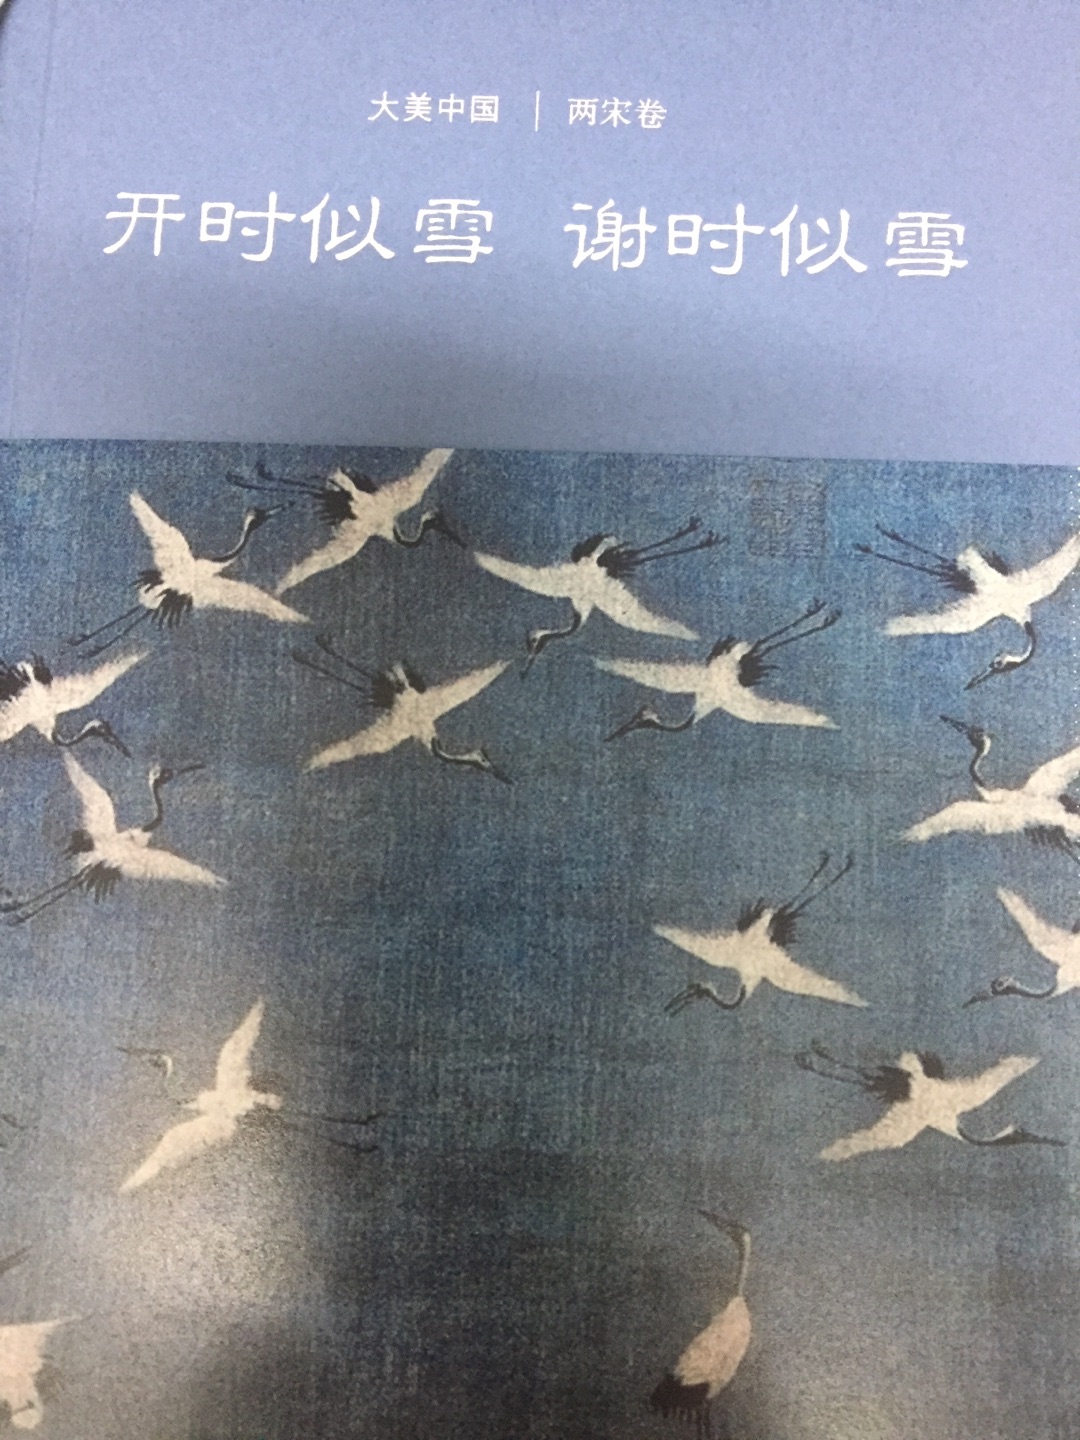 陈炎老师著作，不过就是中国审美文化史重印而已